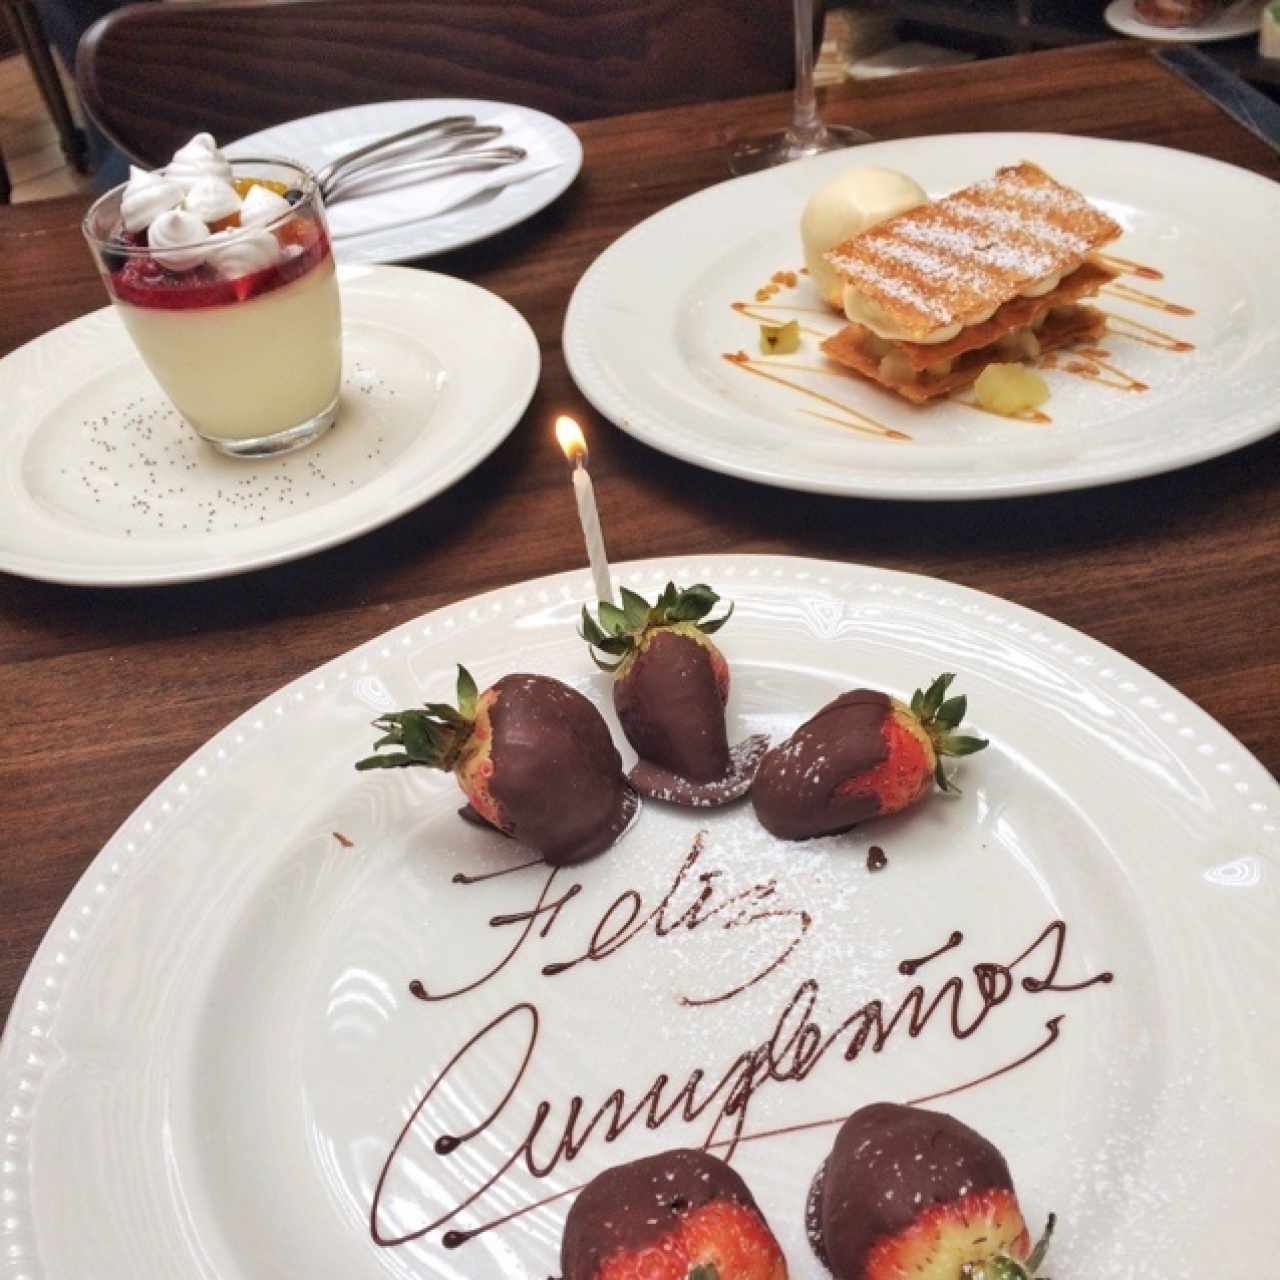 Panna Cotta de Vainilla, Napoleón de Manzana y fresas con chocolate como cortesía de cumpleaños